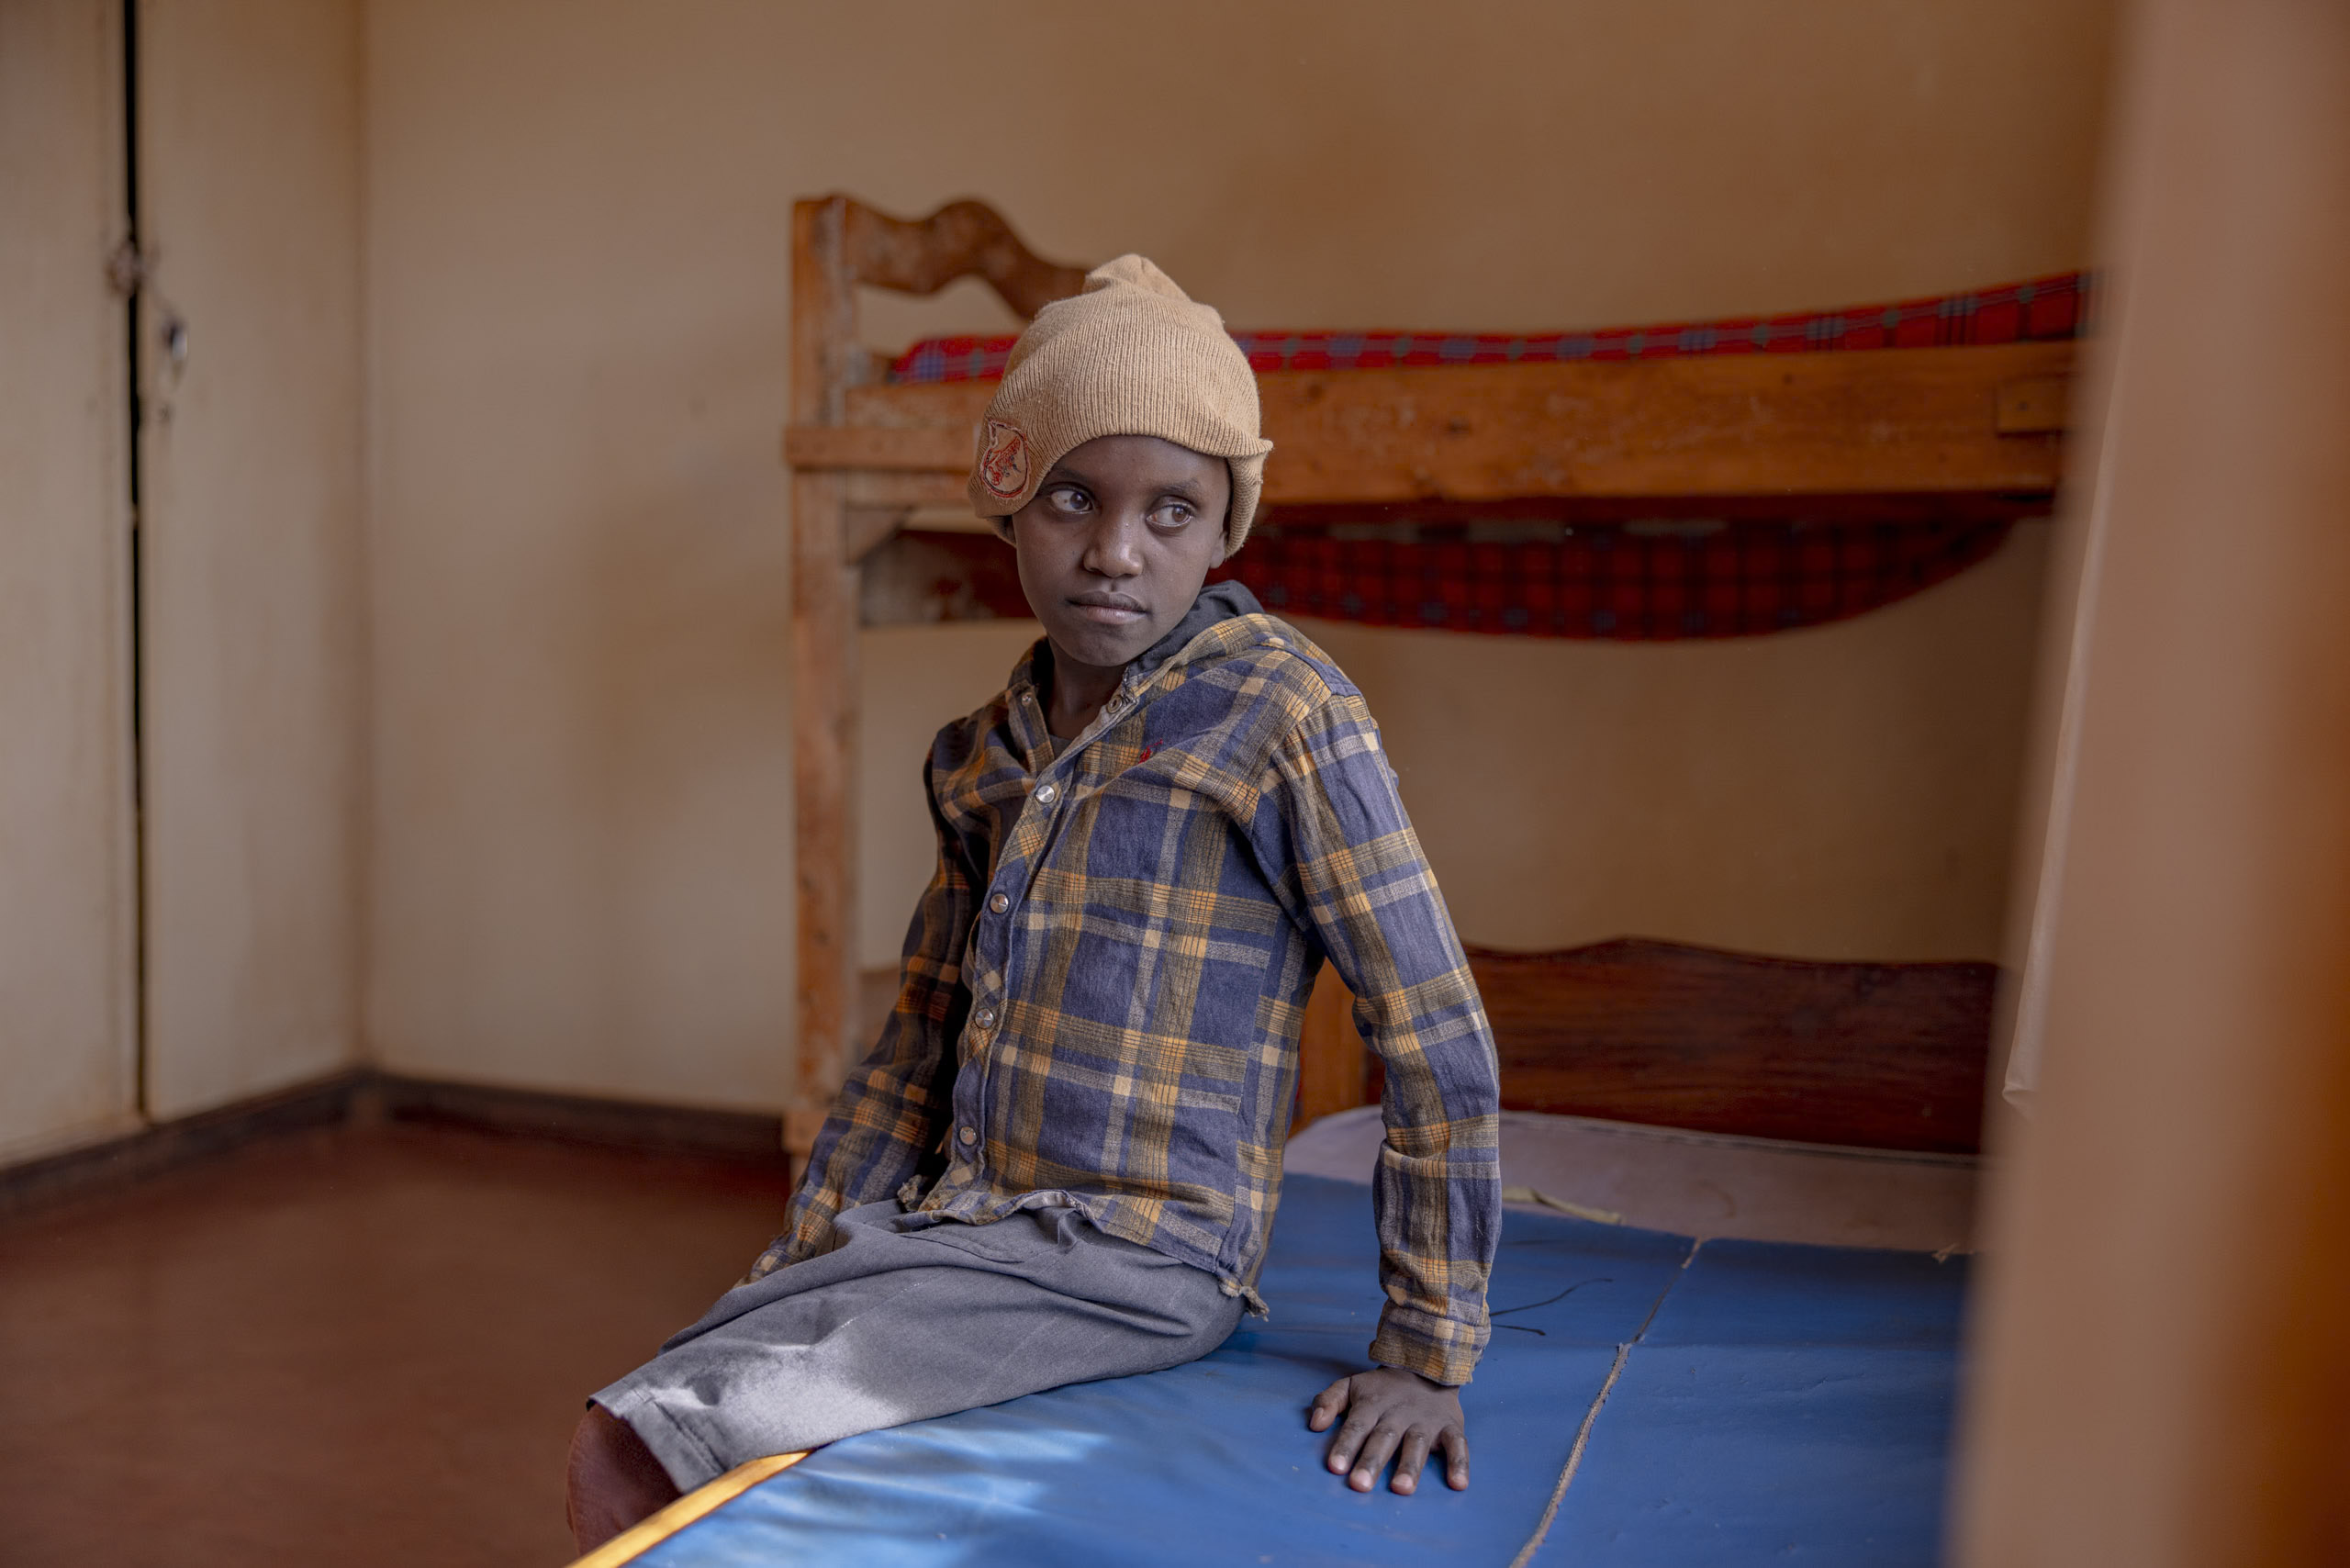 Ein kleiner Junge sitzt in einem Zimmer mit einem Etagenbett aus Holz auf einer blauen Matte. Er trägt ein kariertes Hemd und eine Beanie-Mütze und blickt mit ernster Miene direkt in die Kamera. © Fotografie Tomas Rodriguez